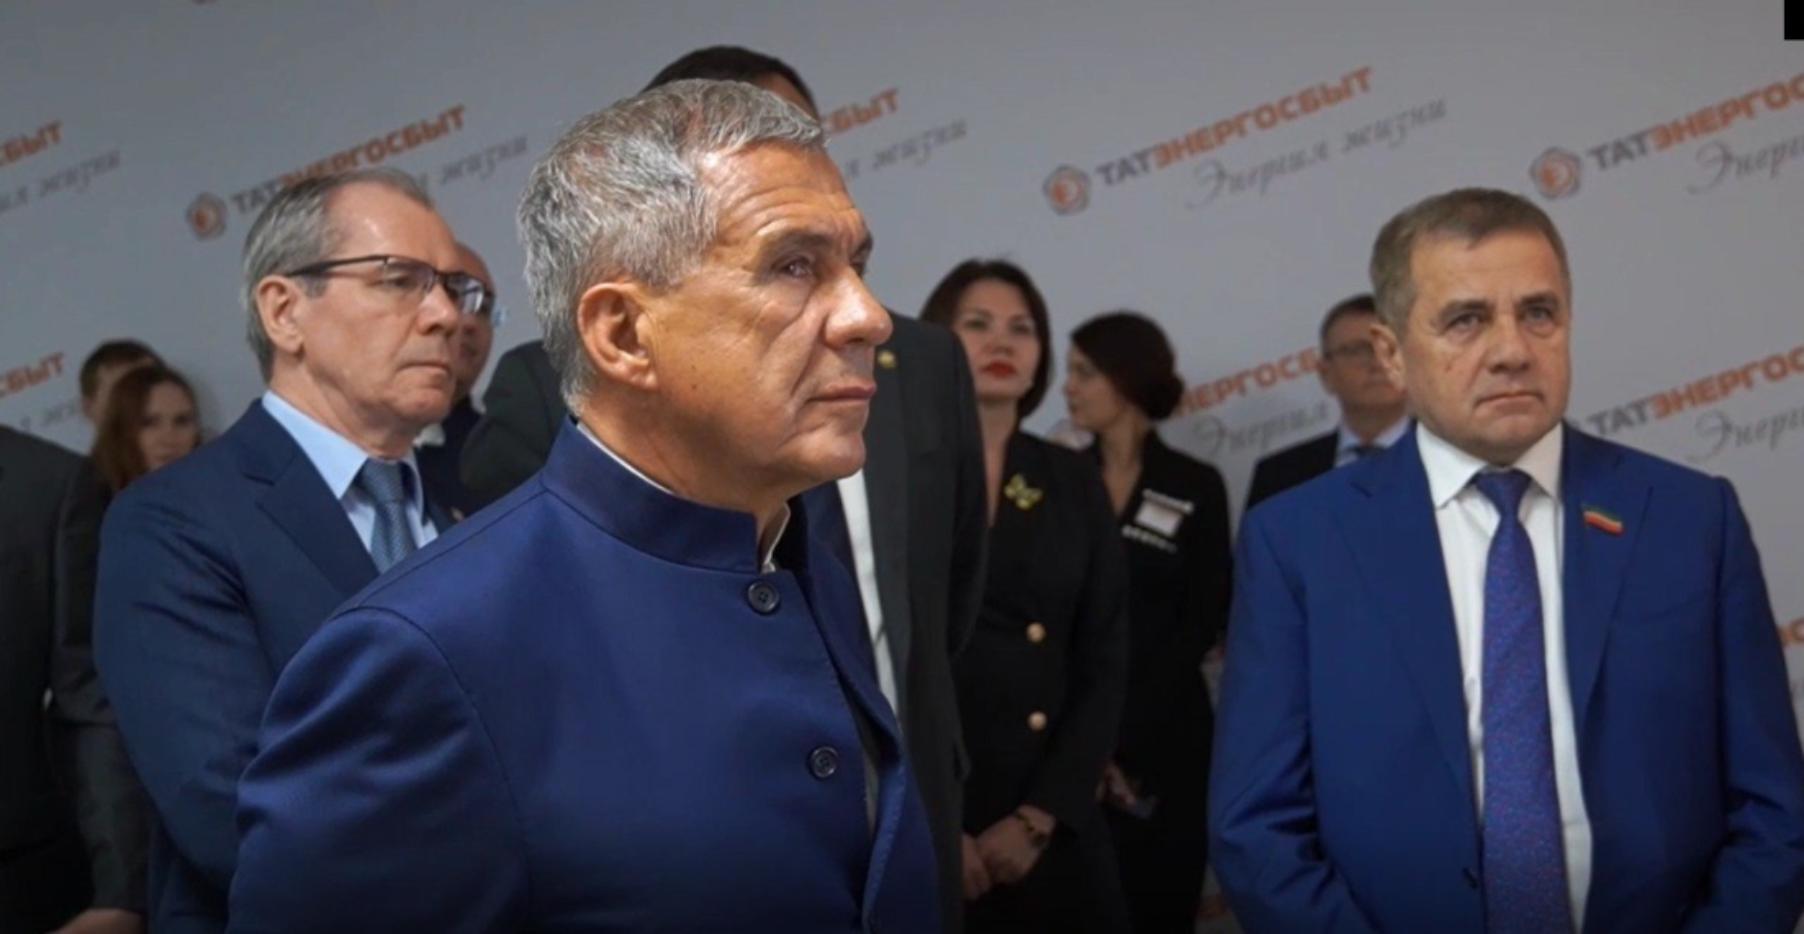 Цифровая Платформа АИС "Отходы" была продемонстрирована Президенту Татарстана